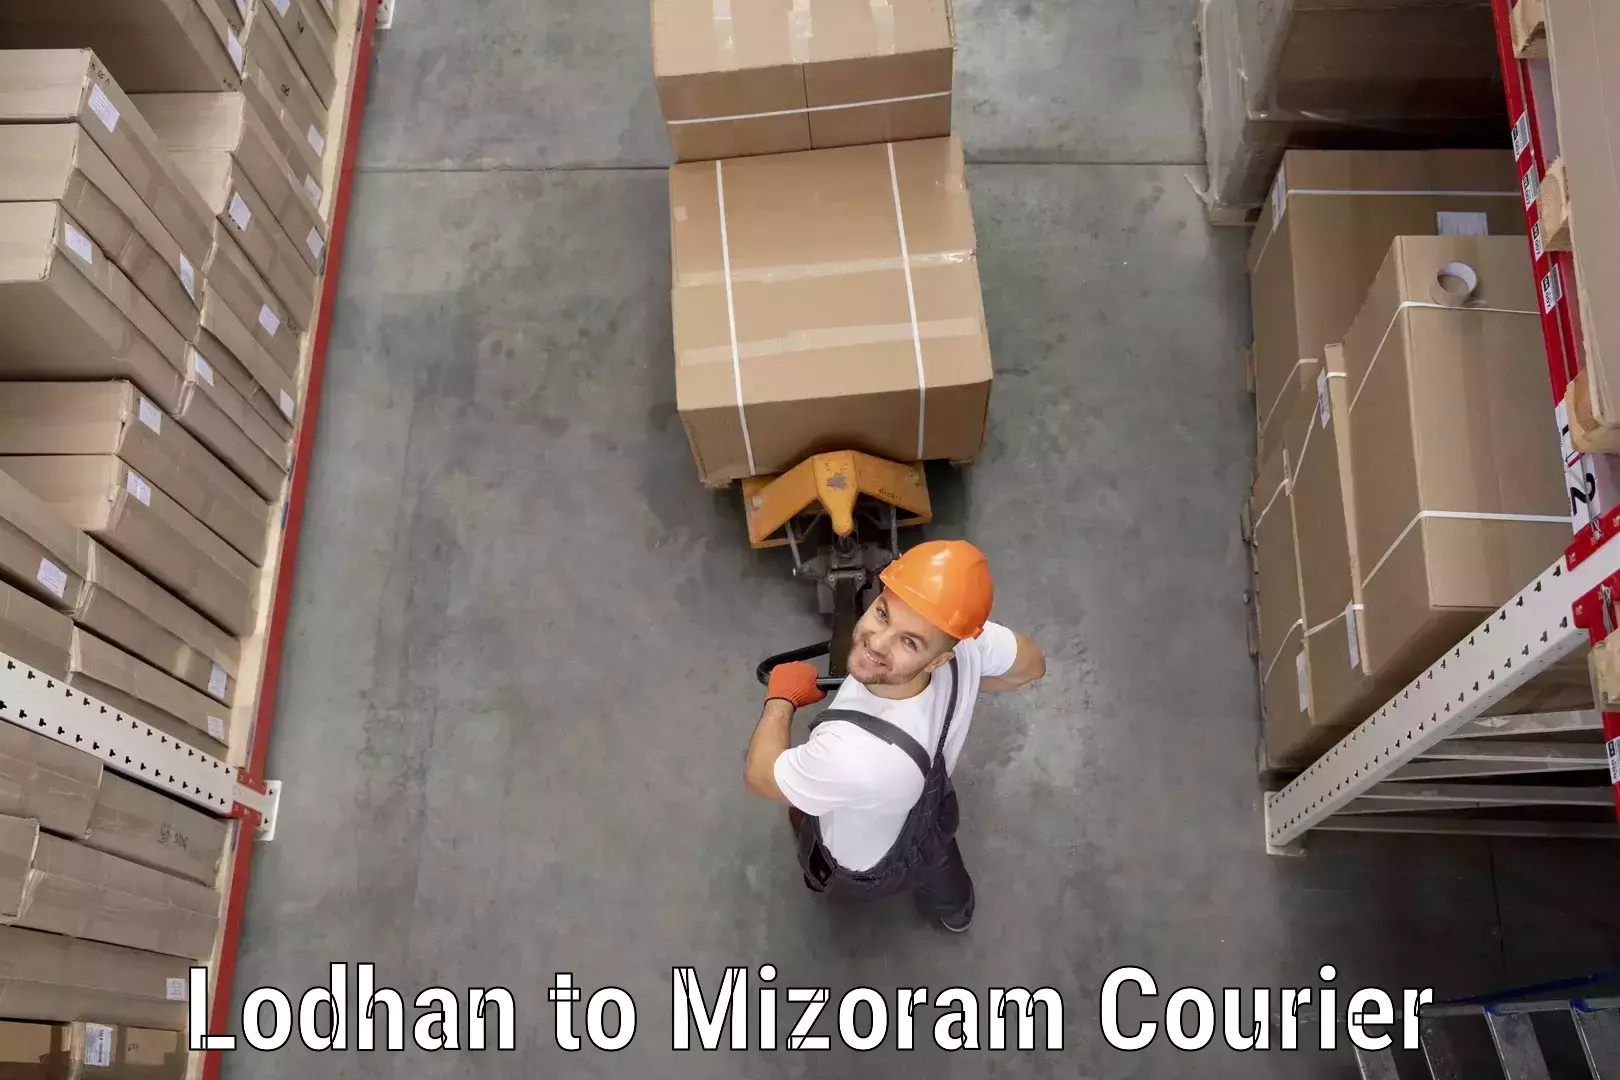 Express shipping Lodhan to Mizoram